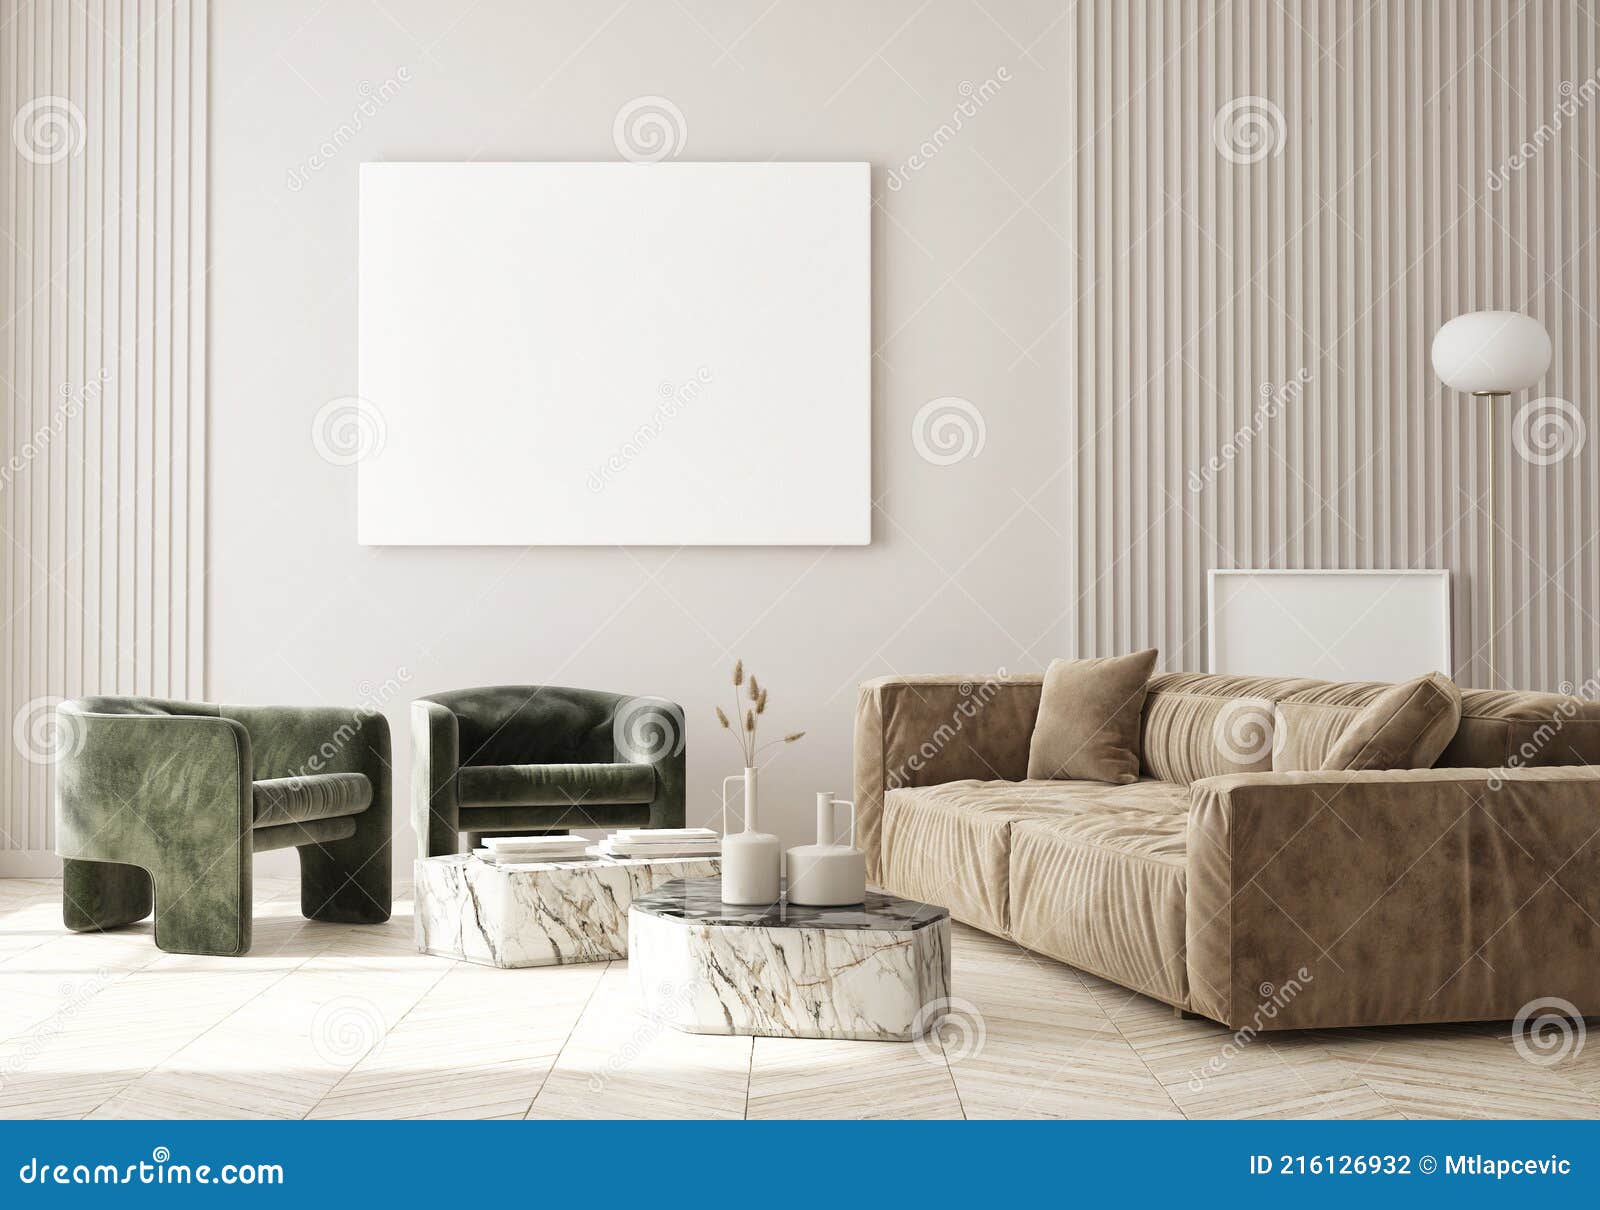 mock up poster frame in modern interior background living room art deco style 3d render